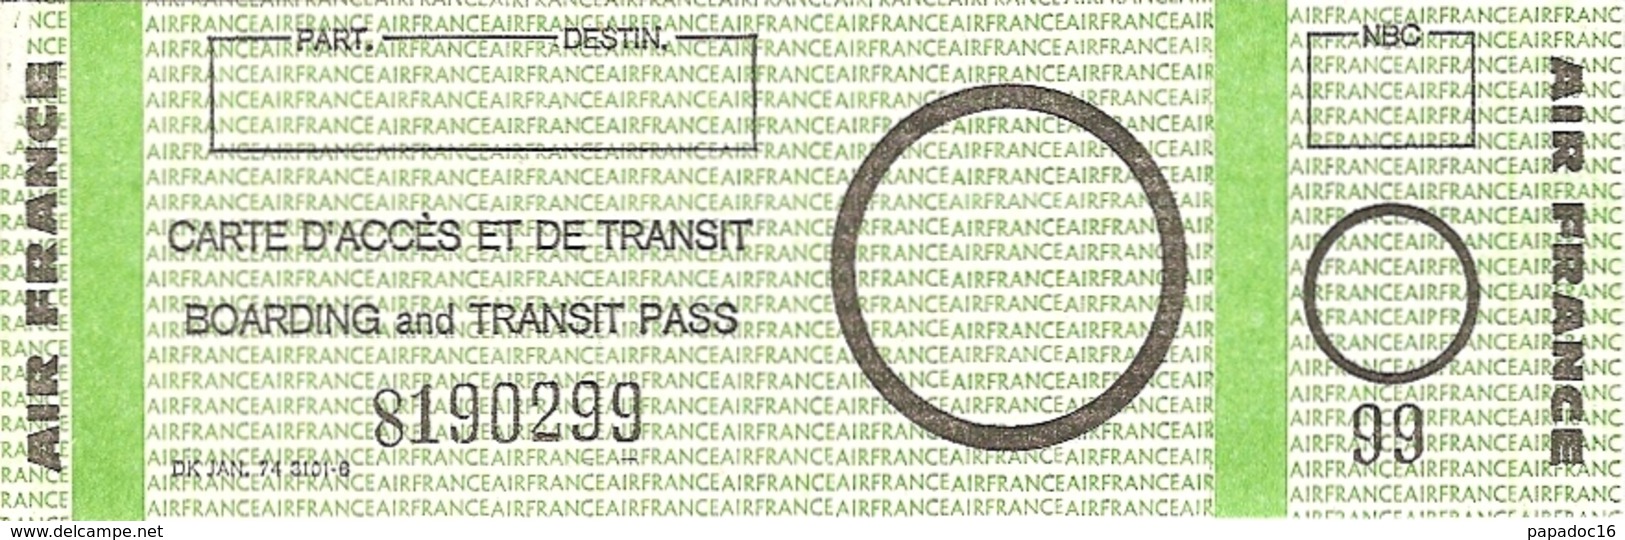 Carte D'accès Et De Transit / Boarding And Transit Pass - Air France (1976) Recto - Europe